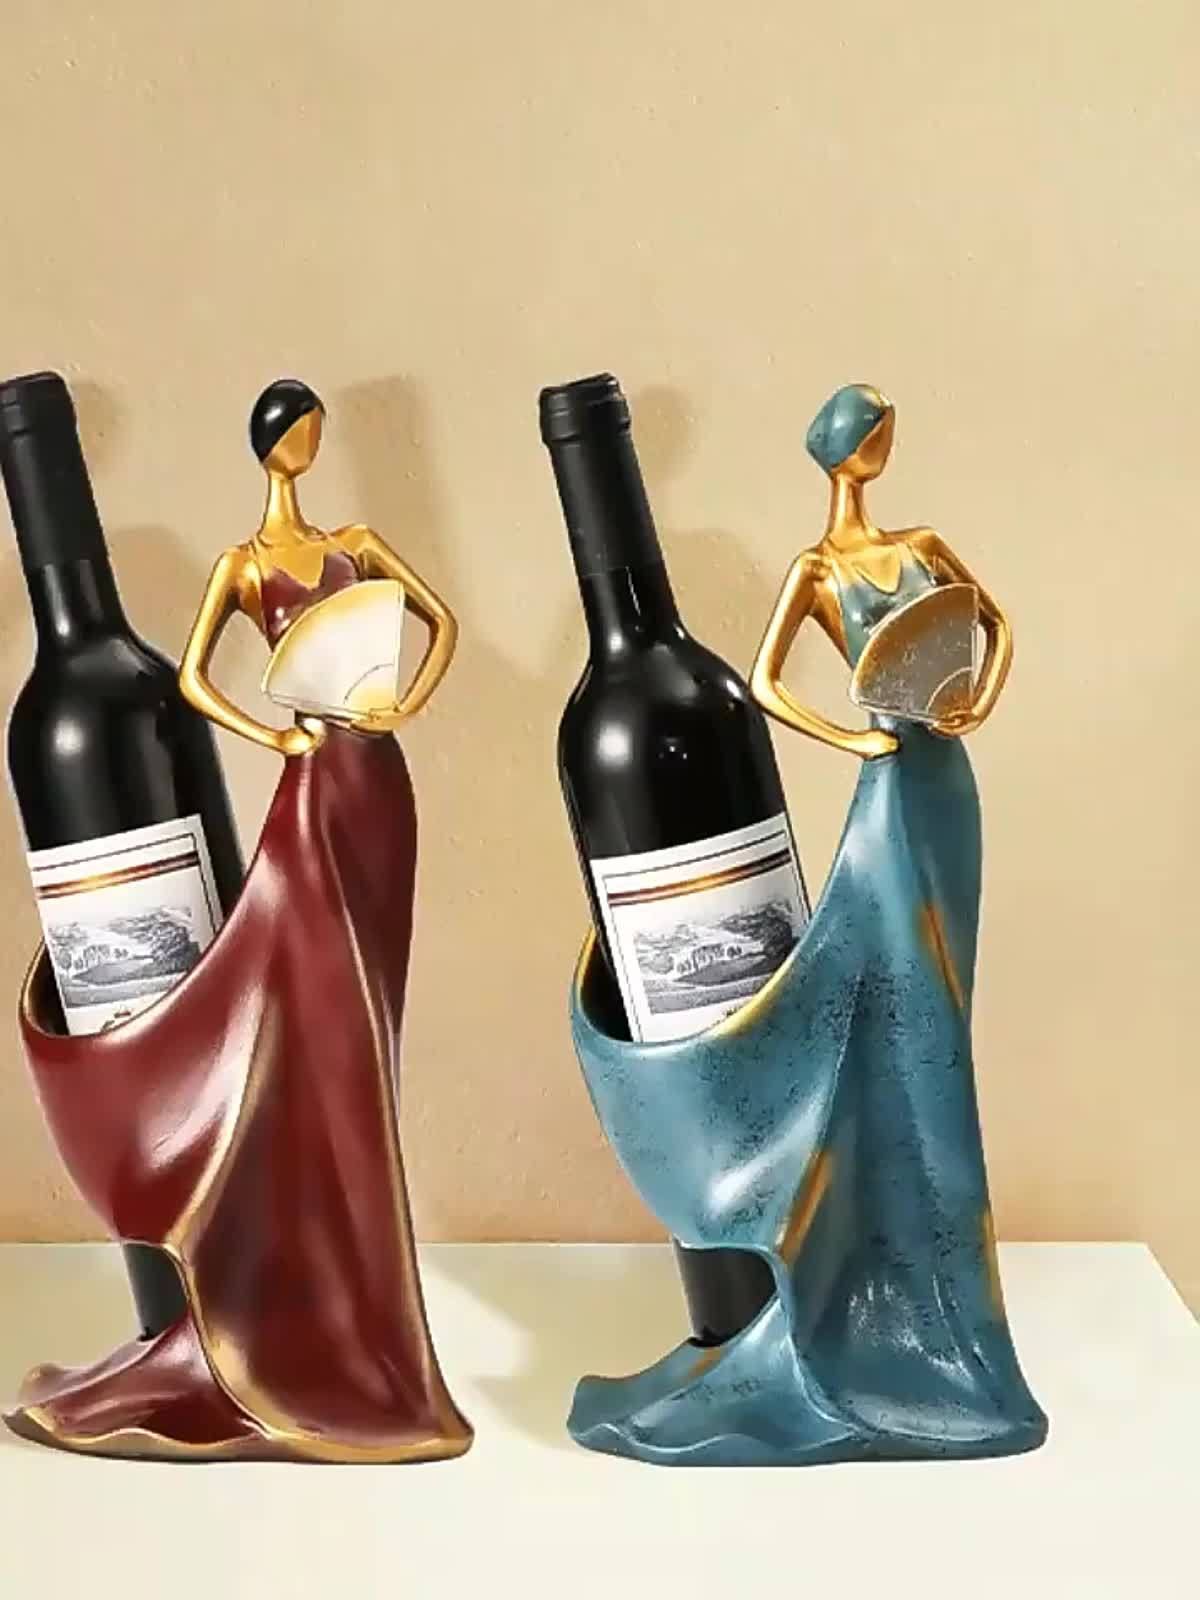 GIZNXBA Botellero Vino Vertical, Estante del Vino Encimera, Resina Botella  De Vino Titular De La Escultura, Decoración De Mesa Estante del Vino para